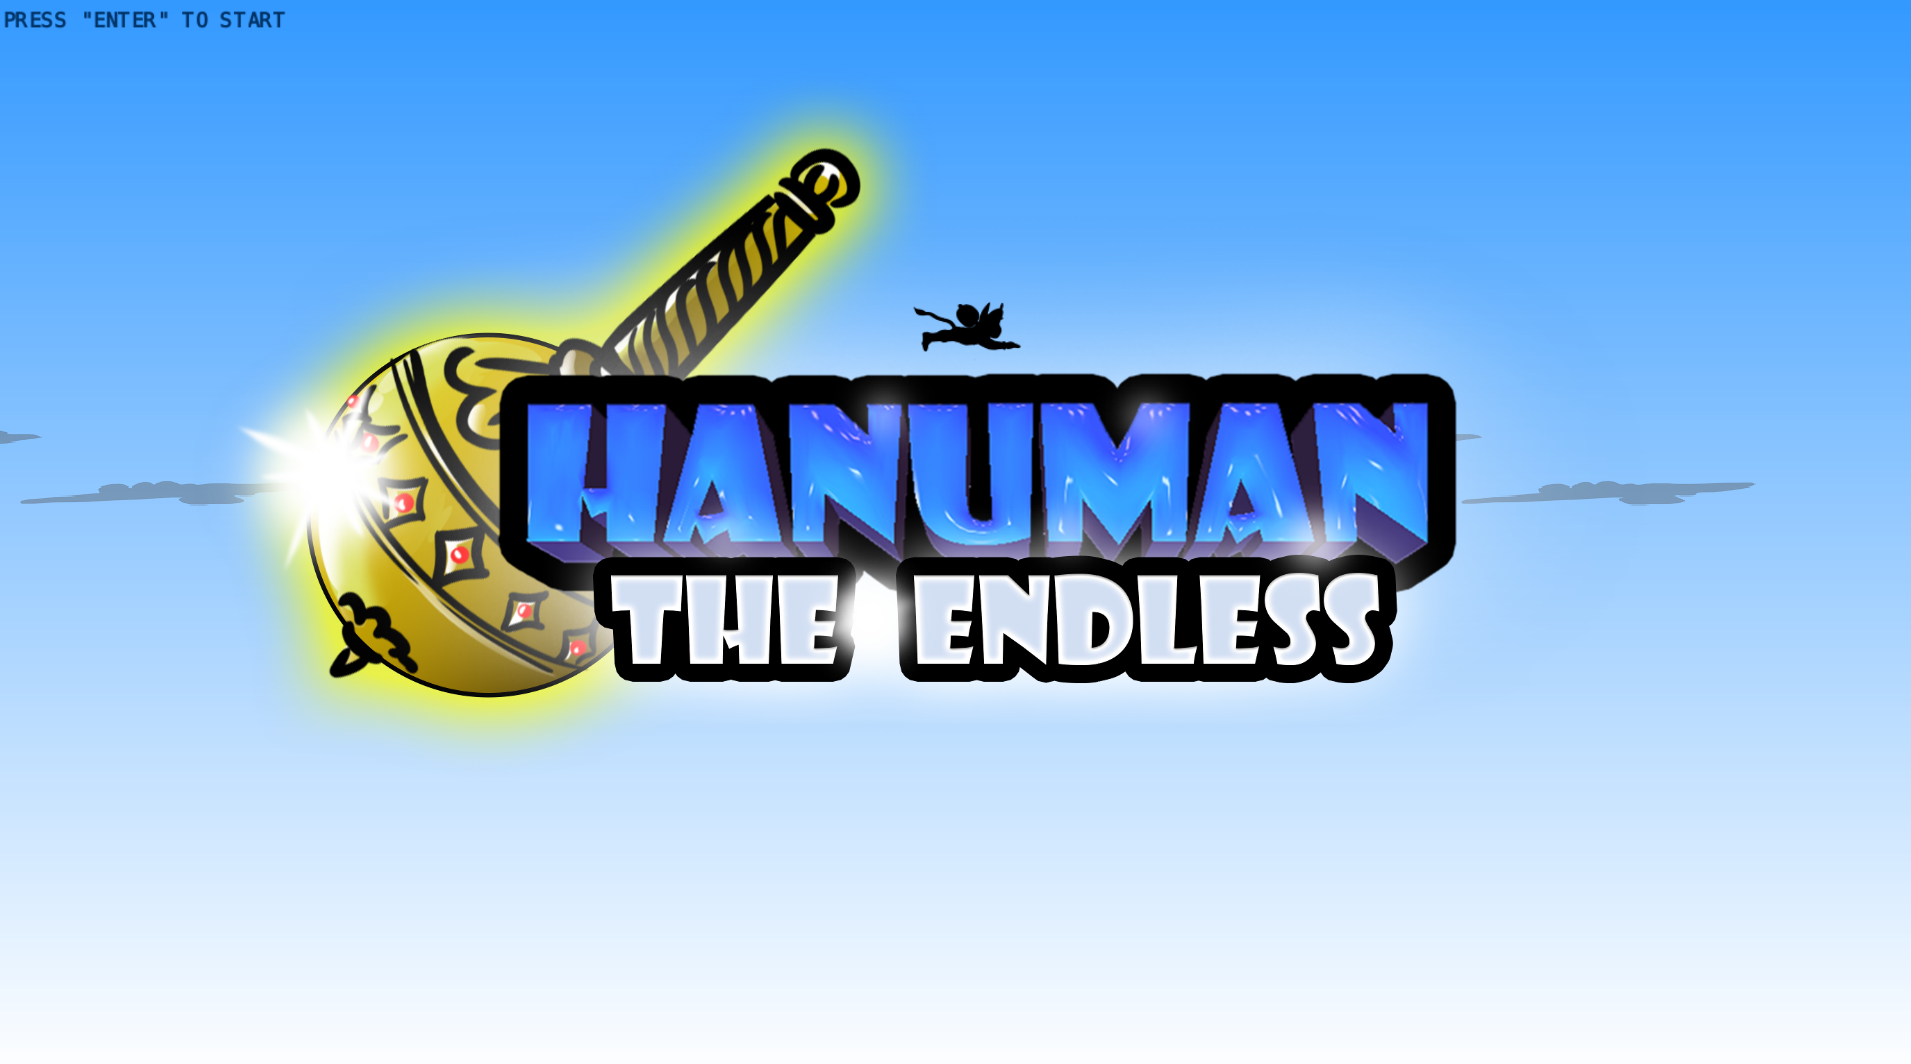 HANUMAN THE ENDLESS (PC)